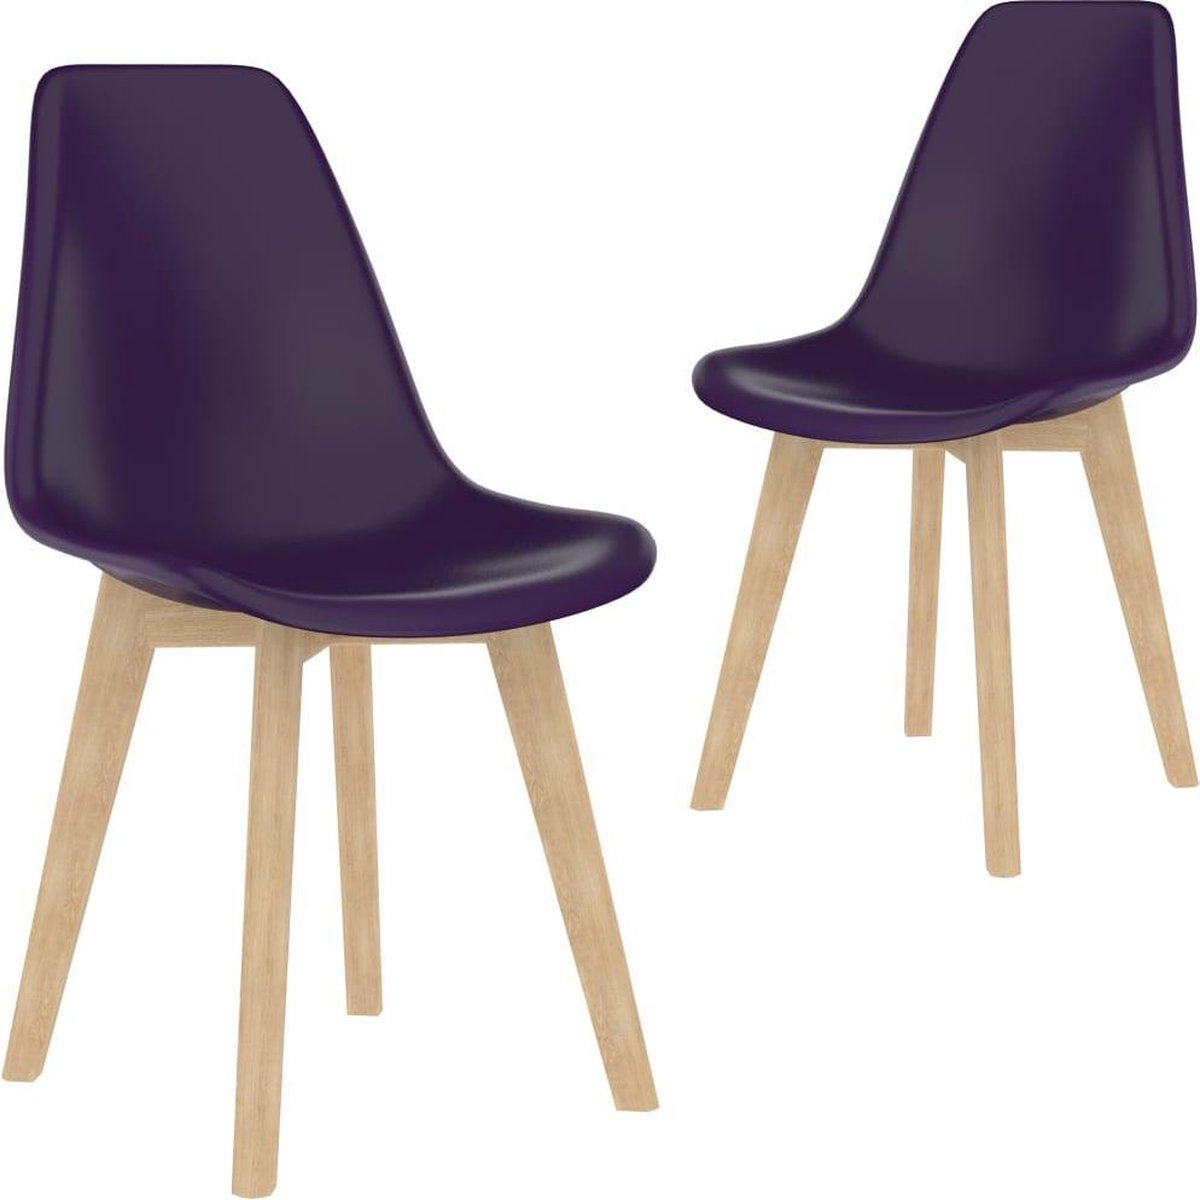 Nord Blanc 2 Moderne kunststof eetkamerstoelen stoelen paars ergonomische kuipstoelen Nordic Blanc Palerma Design purple ergonomisch stoel zetel woonkamerstoelen zitting stevig hout plastic Scandinavisch Set van 2 stuks